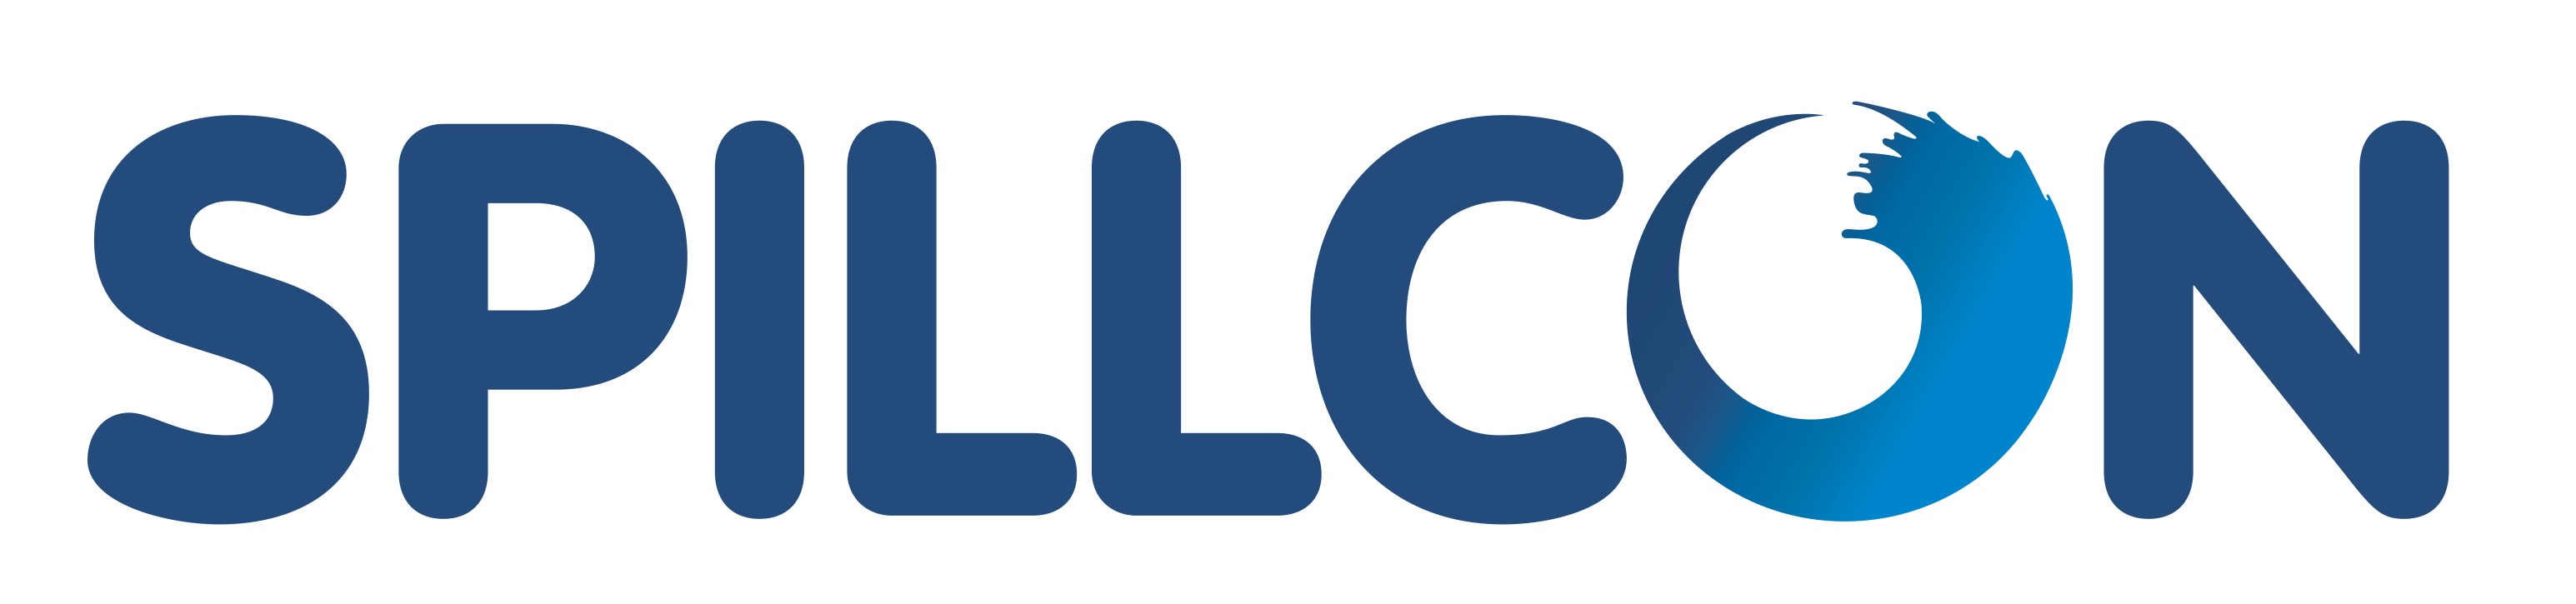 Spillcon Logo